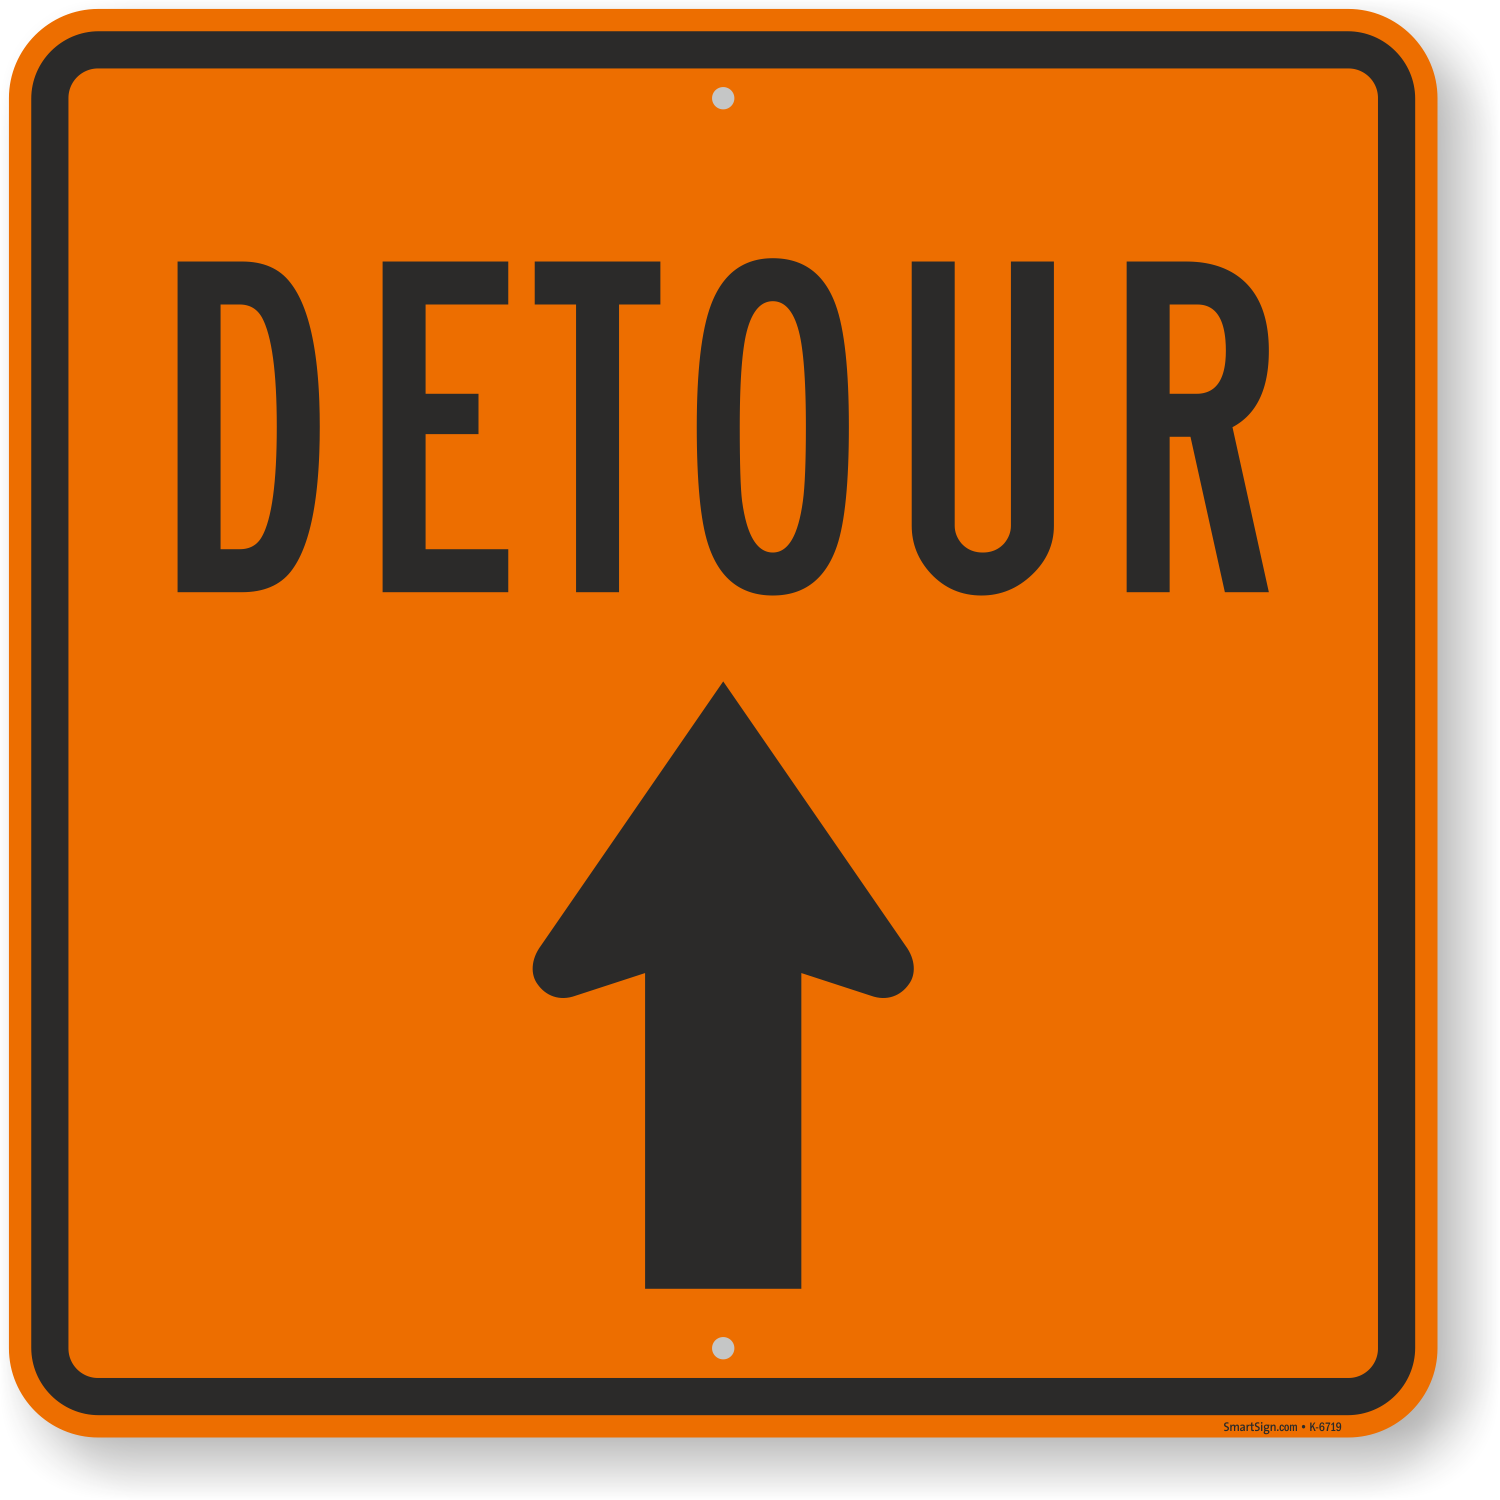 Detour Sign With Arrow Sku K 6719